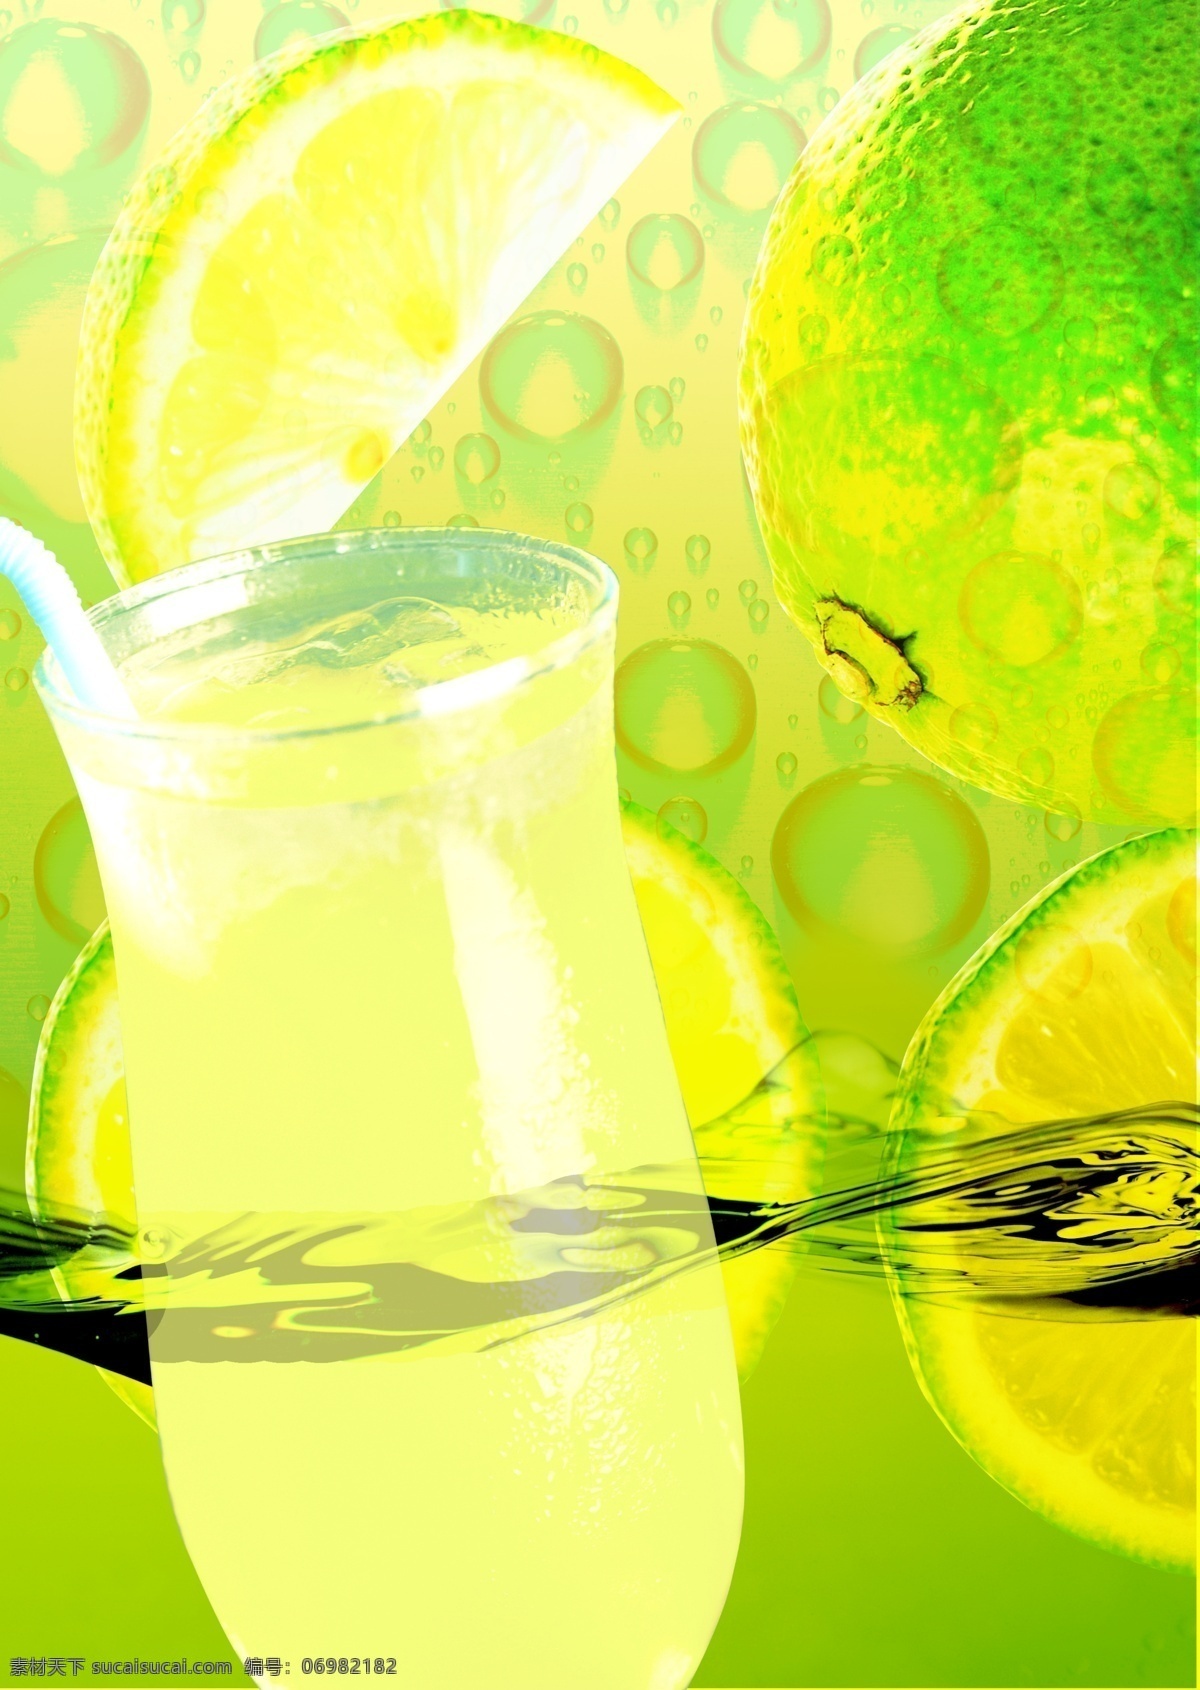 柠檬 果汁 橙汁 橙子 广告设计模板 画册设计 橘子 源文件 柠檬果汁 其他画册封面